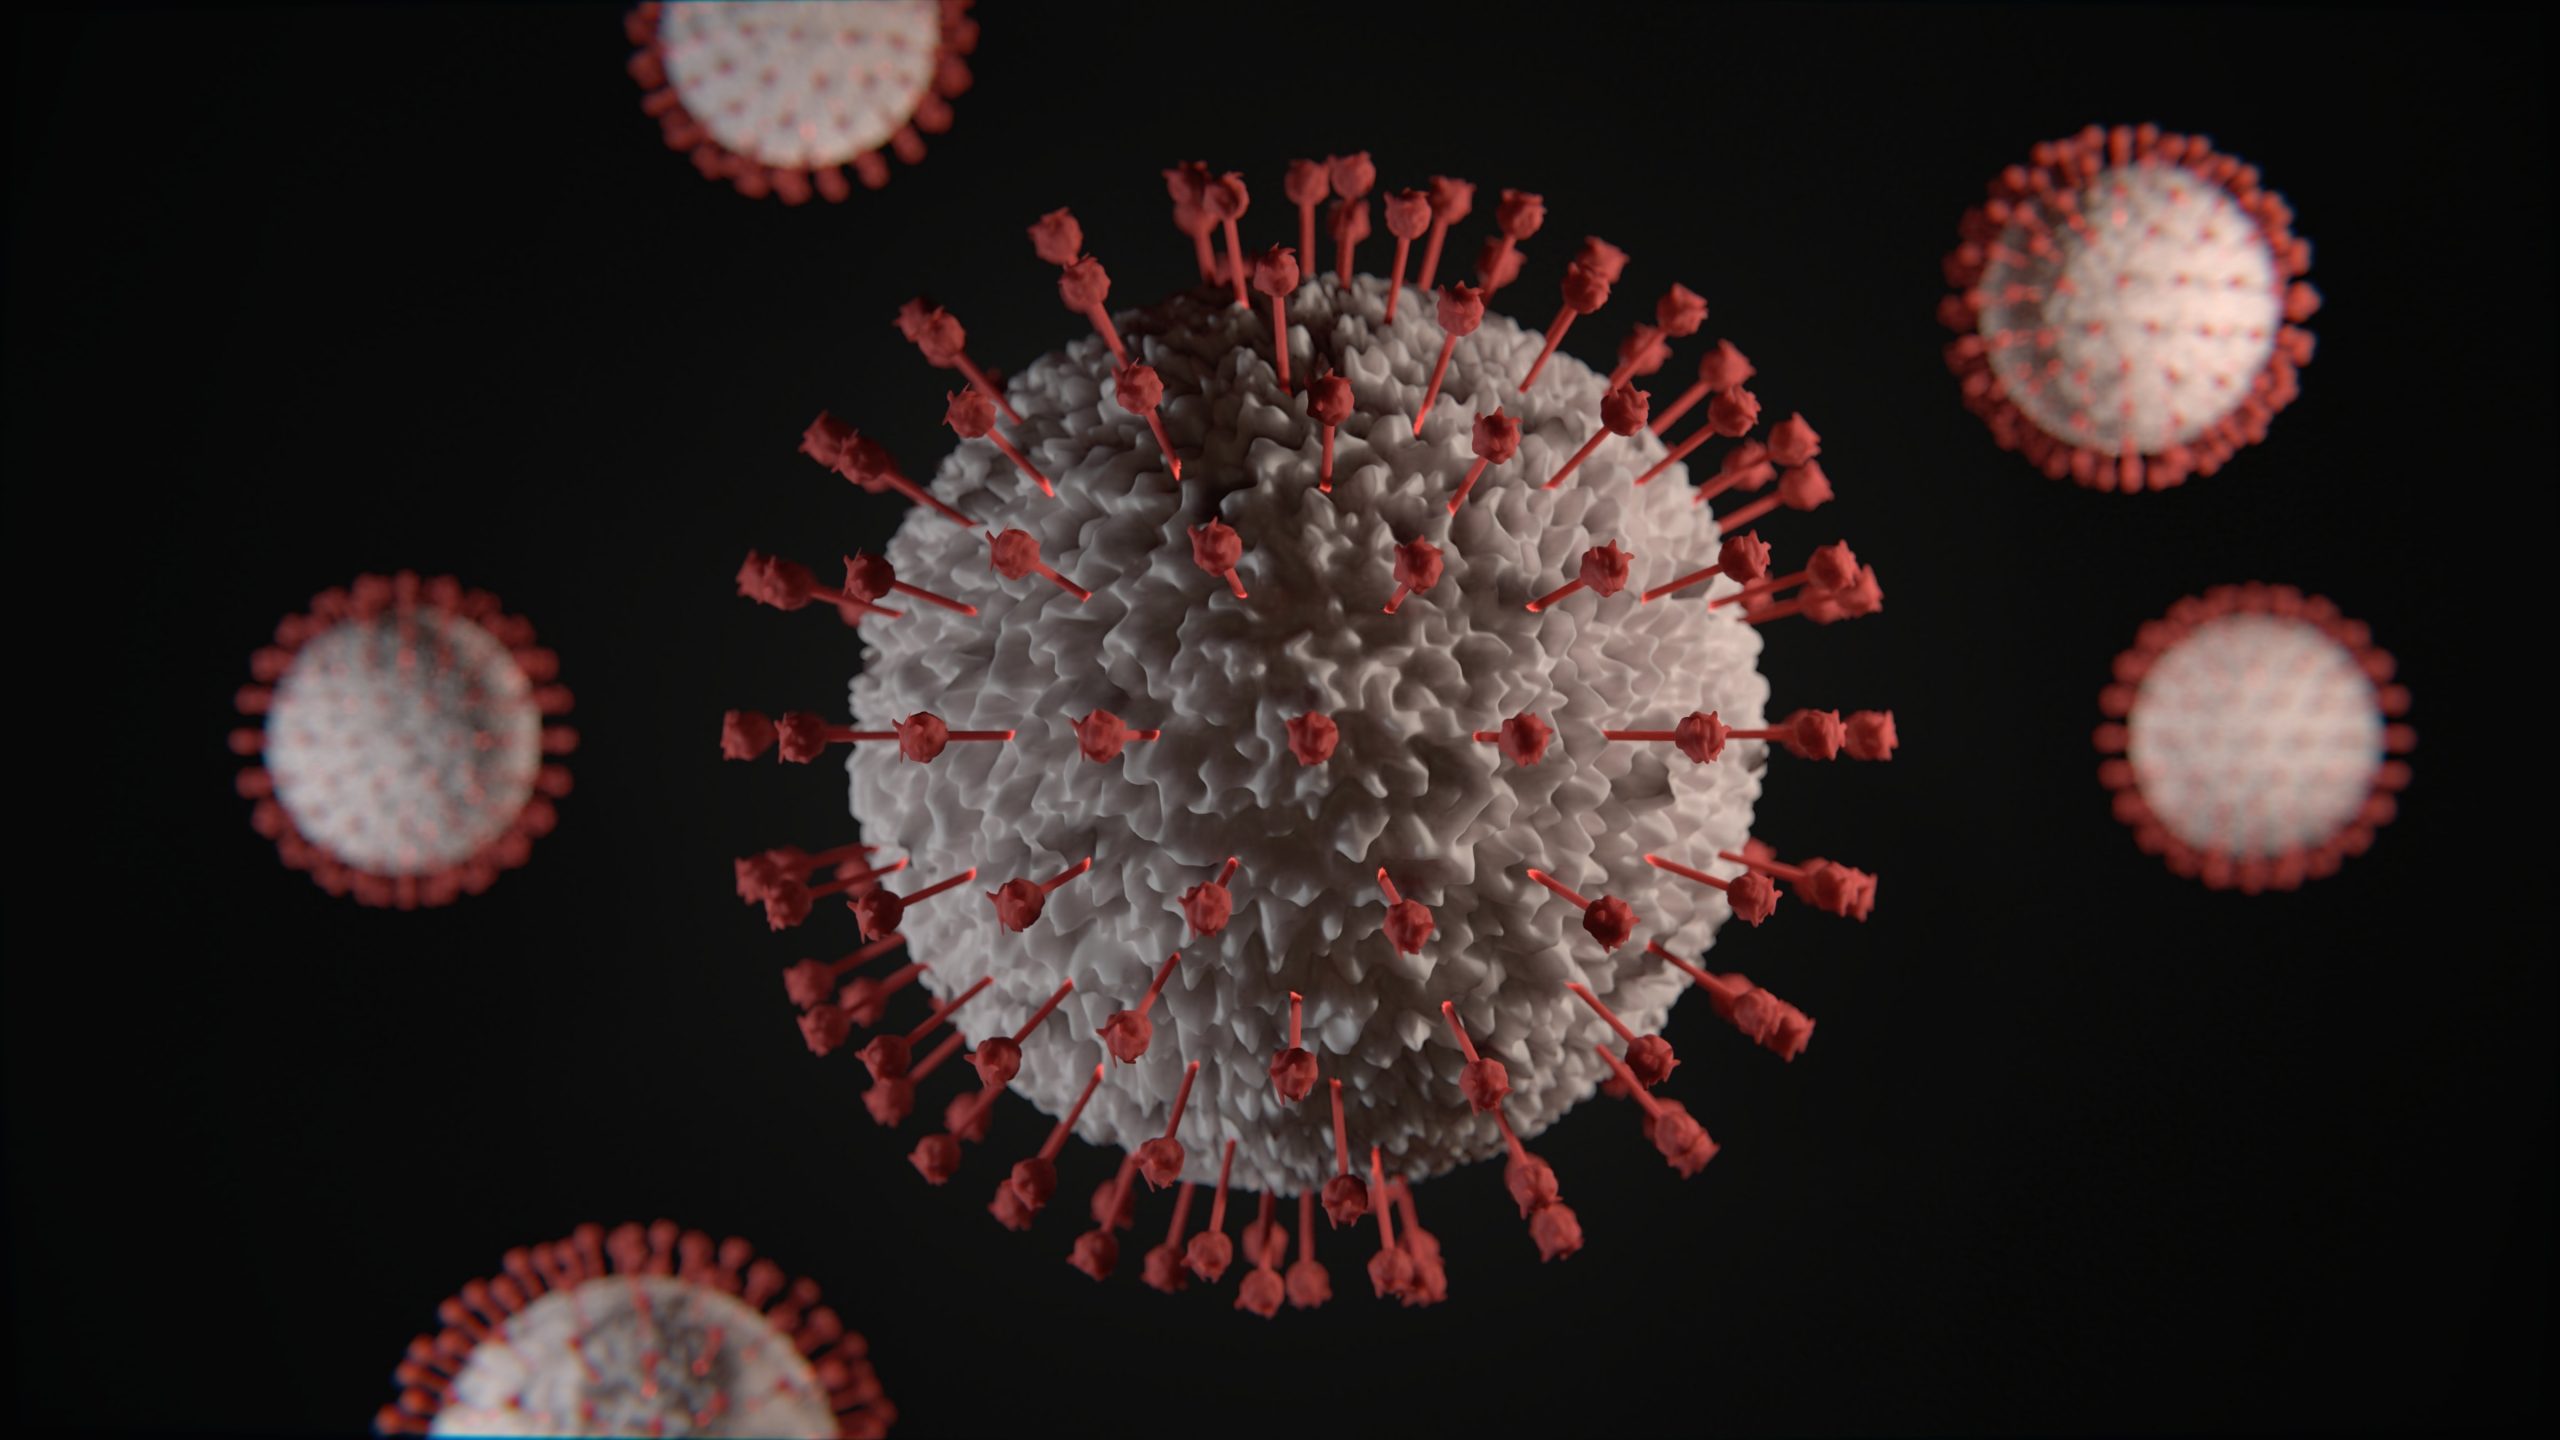 كيف تنتقل الفيروسات من الحيوانات للانسان